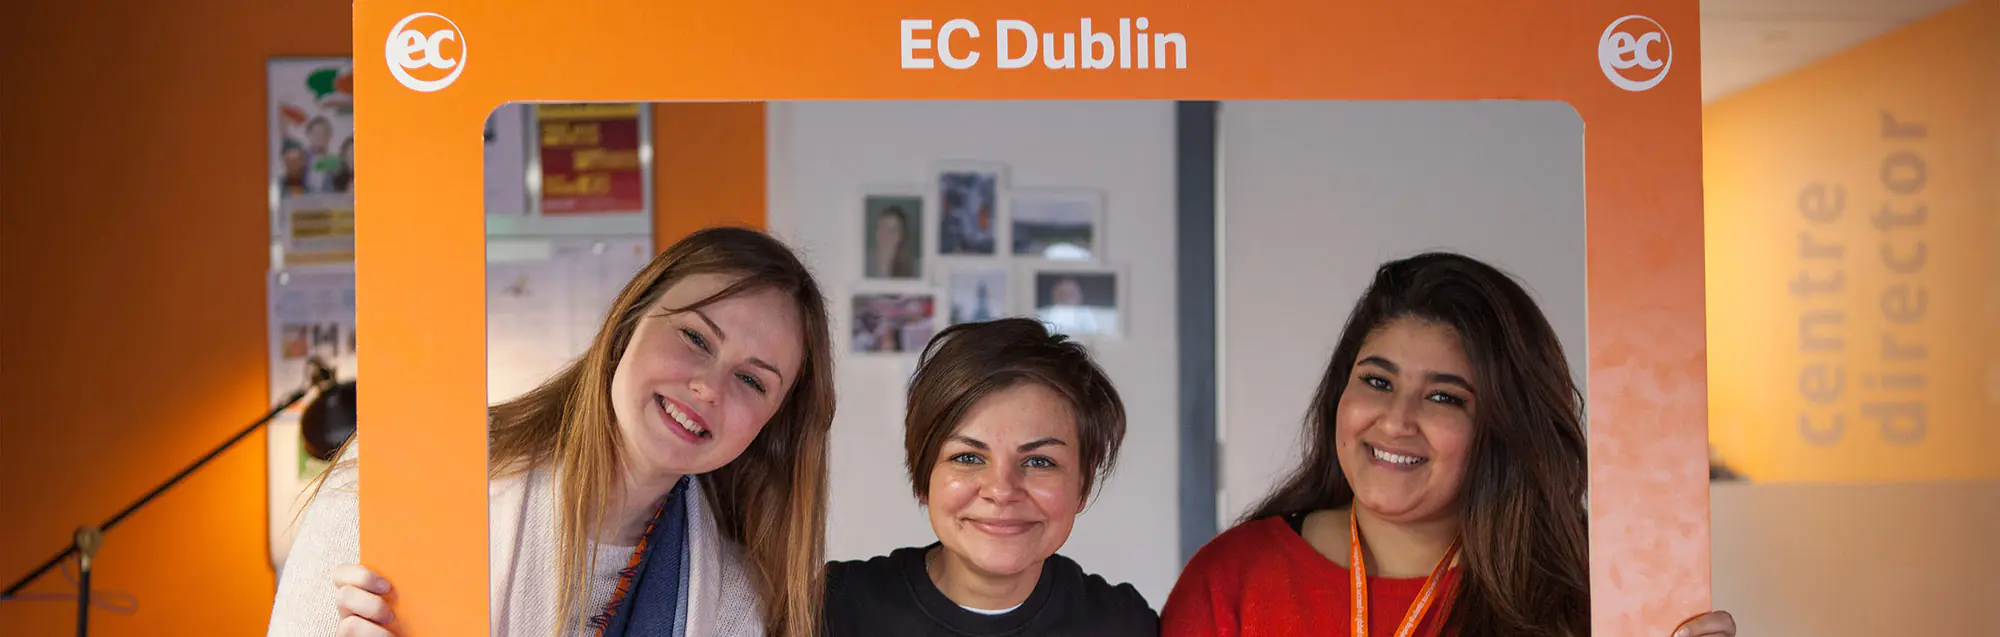 Le sistemazioni offerte da EC Dublin 30plus